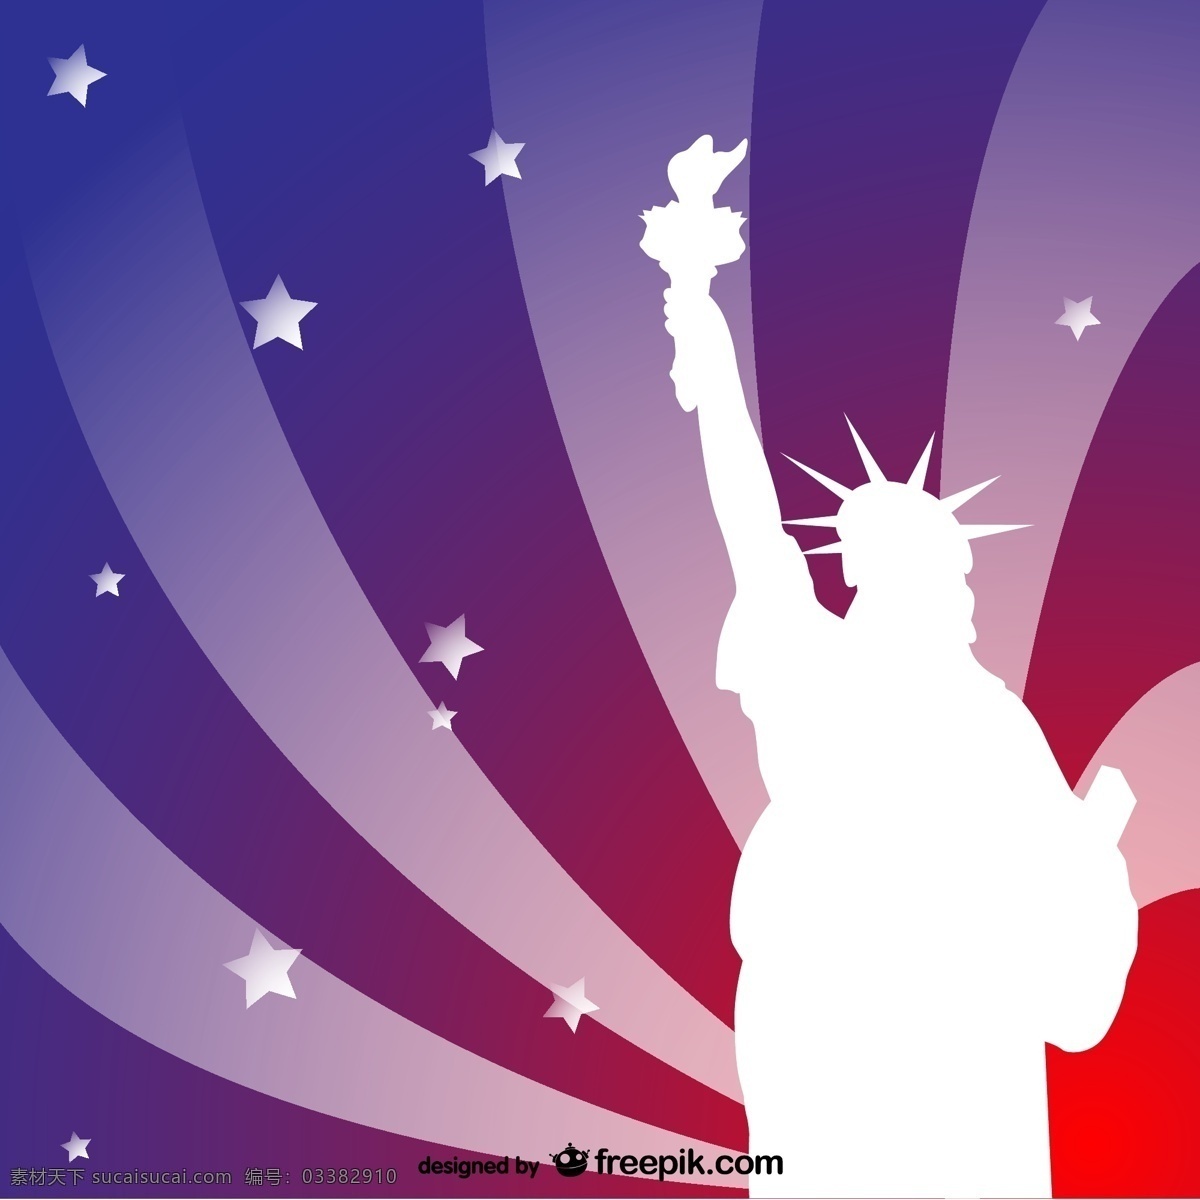 自由 女神像 背景 模板 壁纸 图形 布局 图形设计 事件 元素 插图 设计元素 美国 独立日 符号 身份 白色